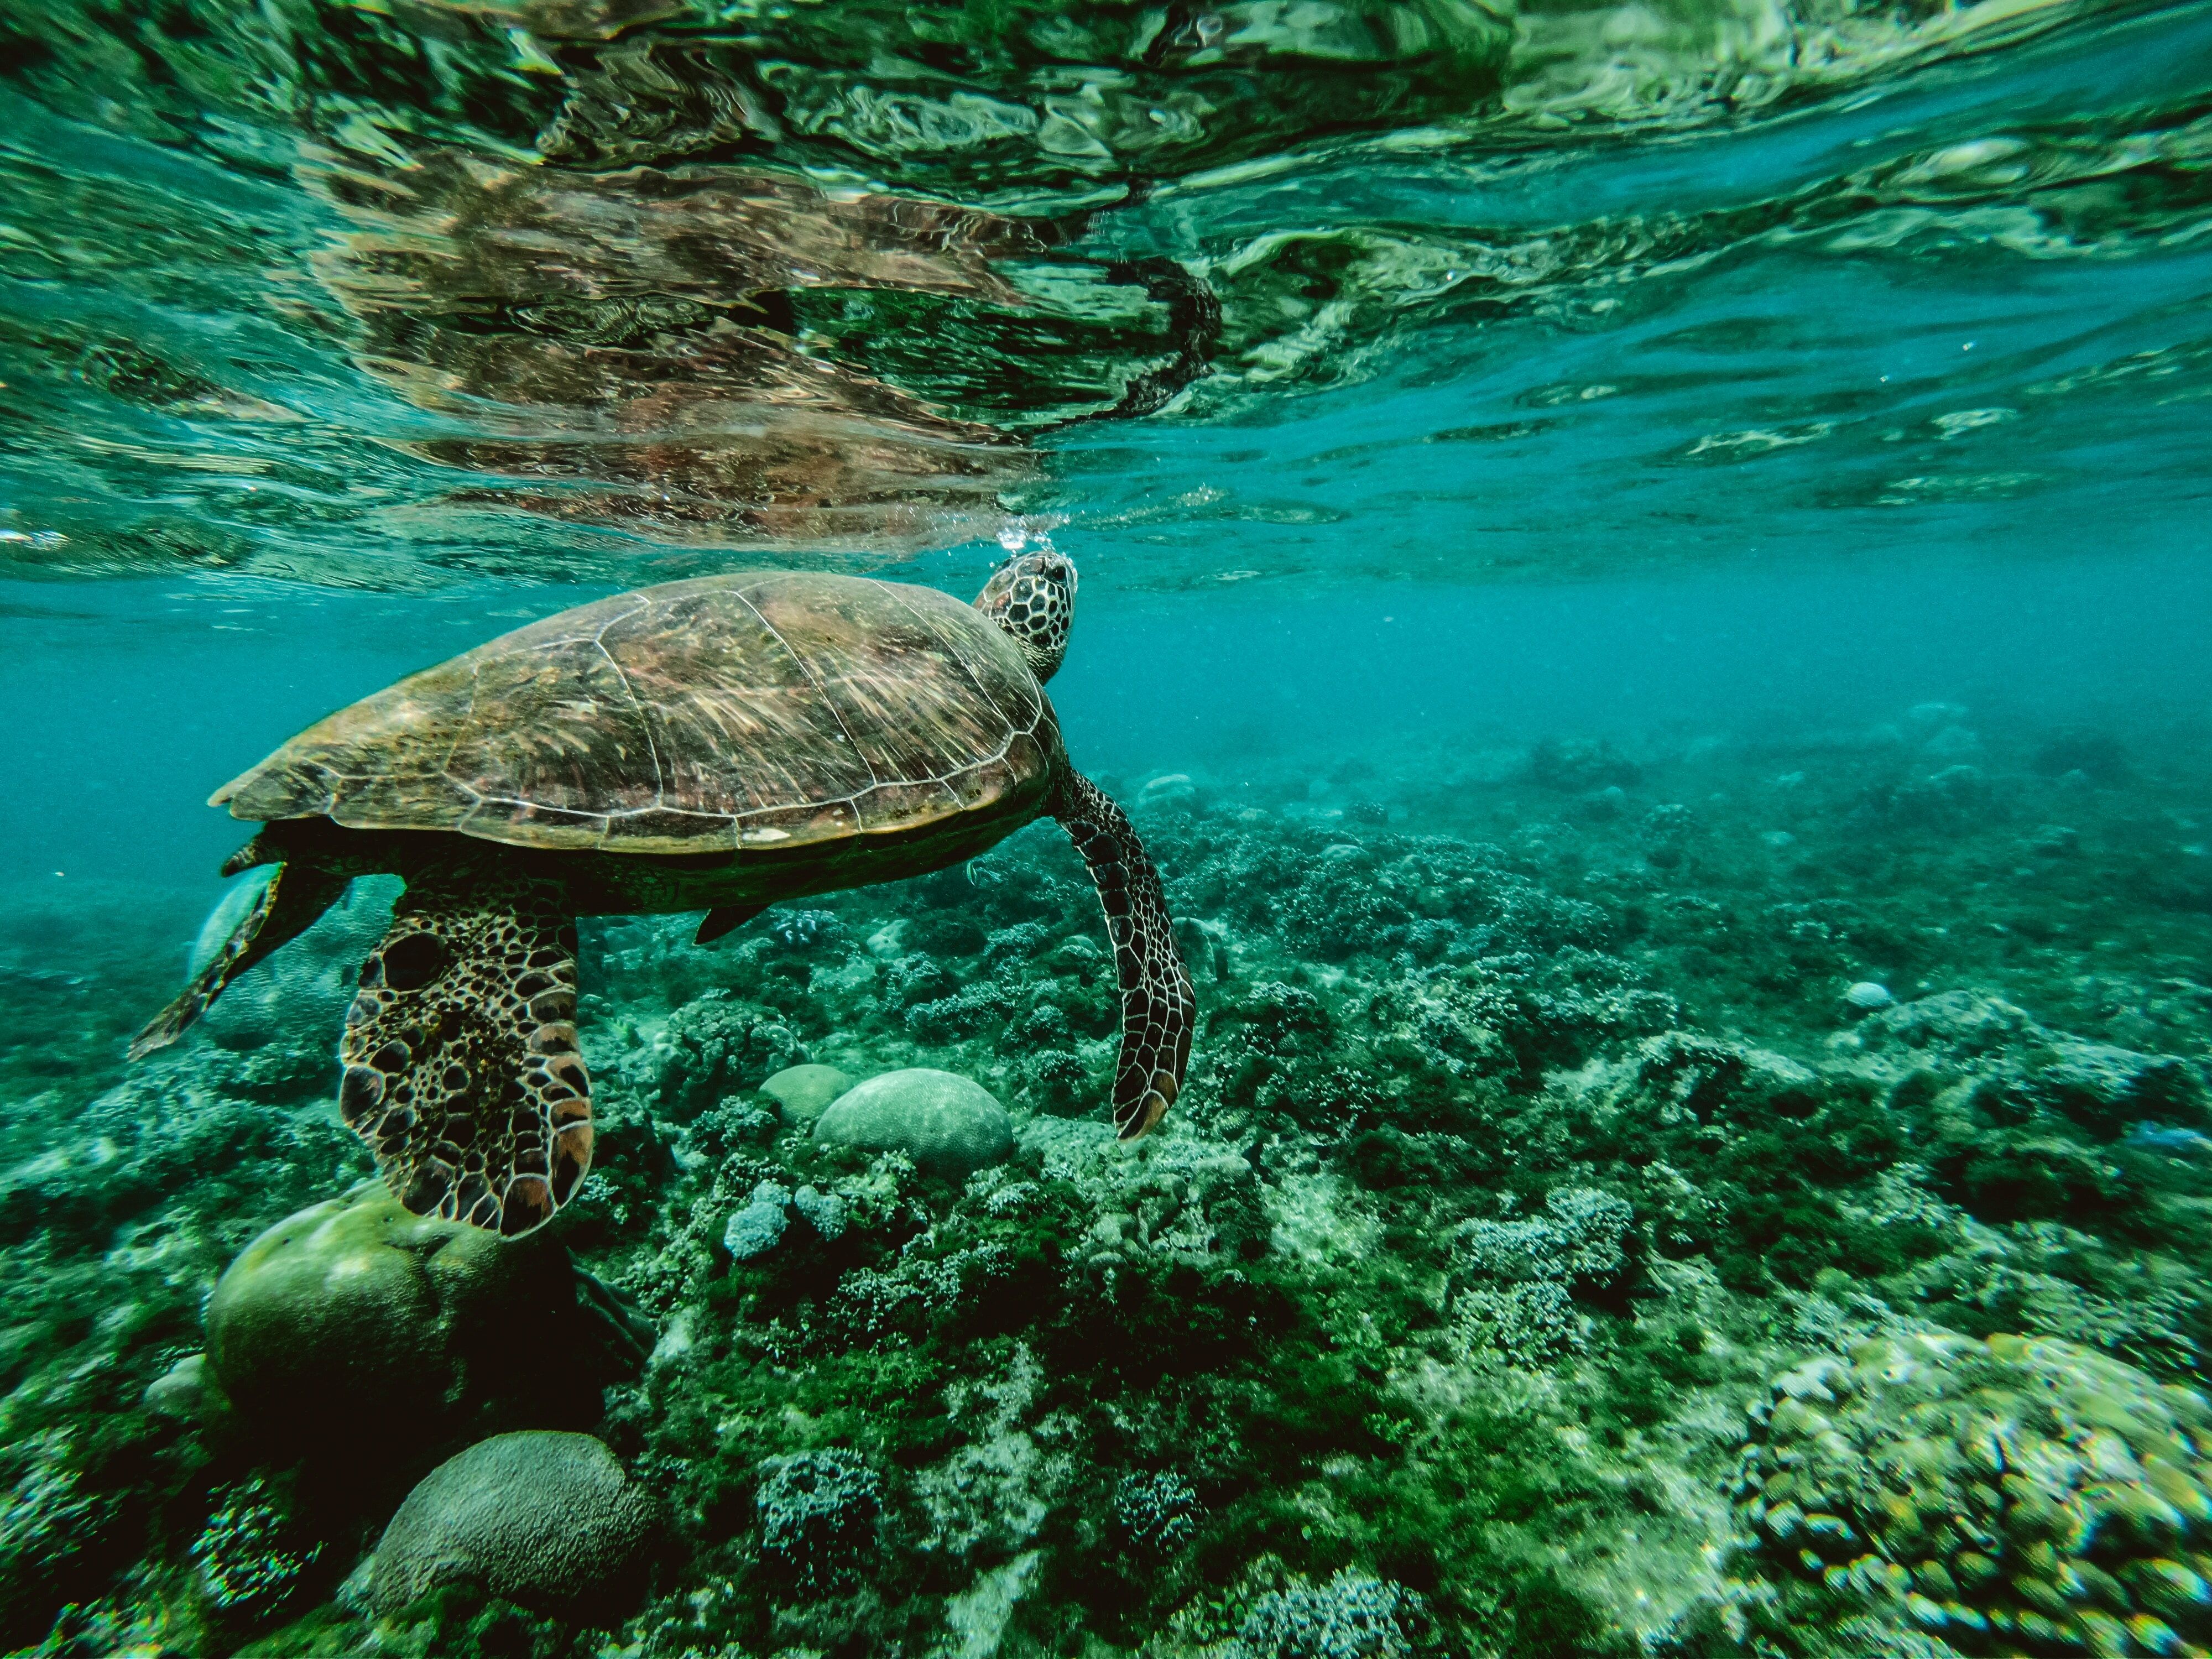 Los lugares salvajes de nuestros océanos están disminuyendo como nunca, lo que supone una inmensa pérdida de hábitat para nuestras criaturas salvajes. Crédito: Belle Co. University of Queensland.